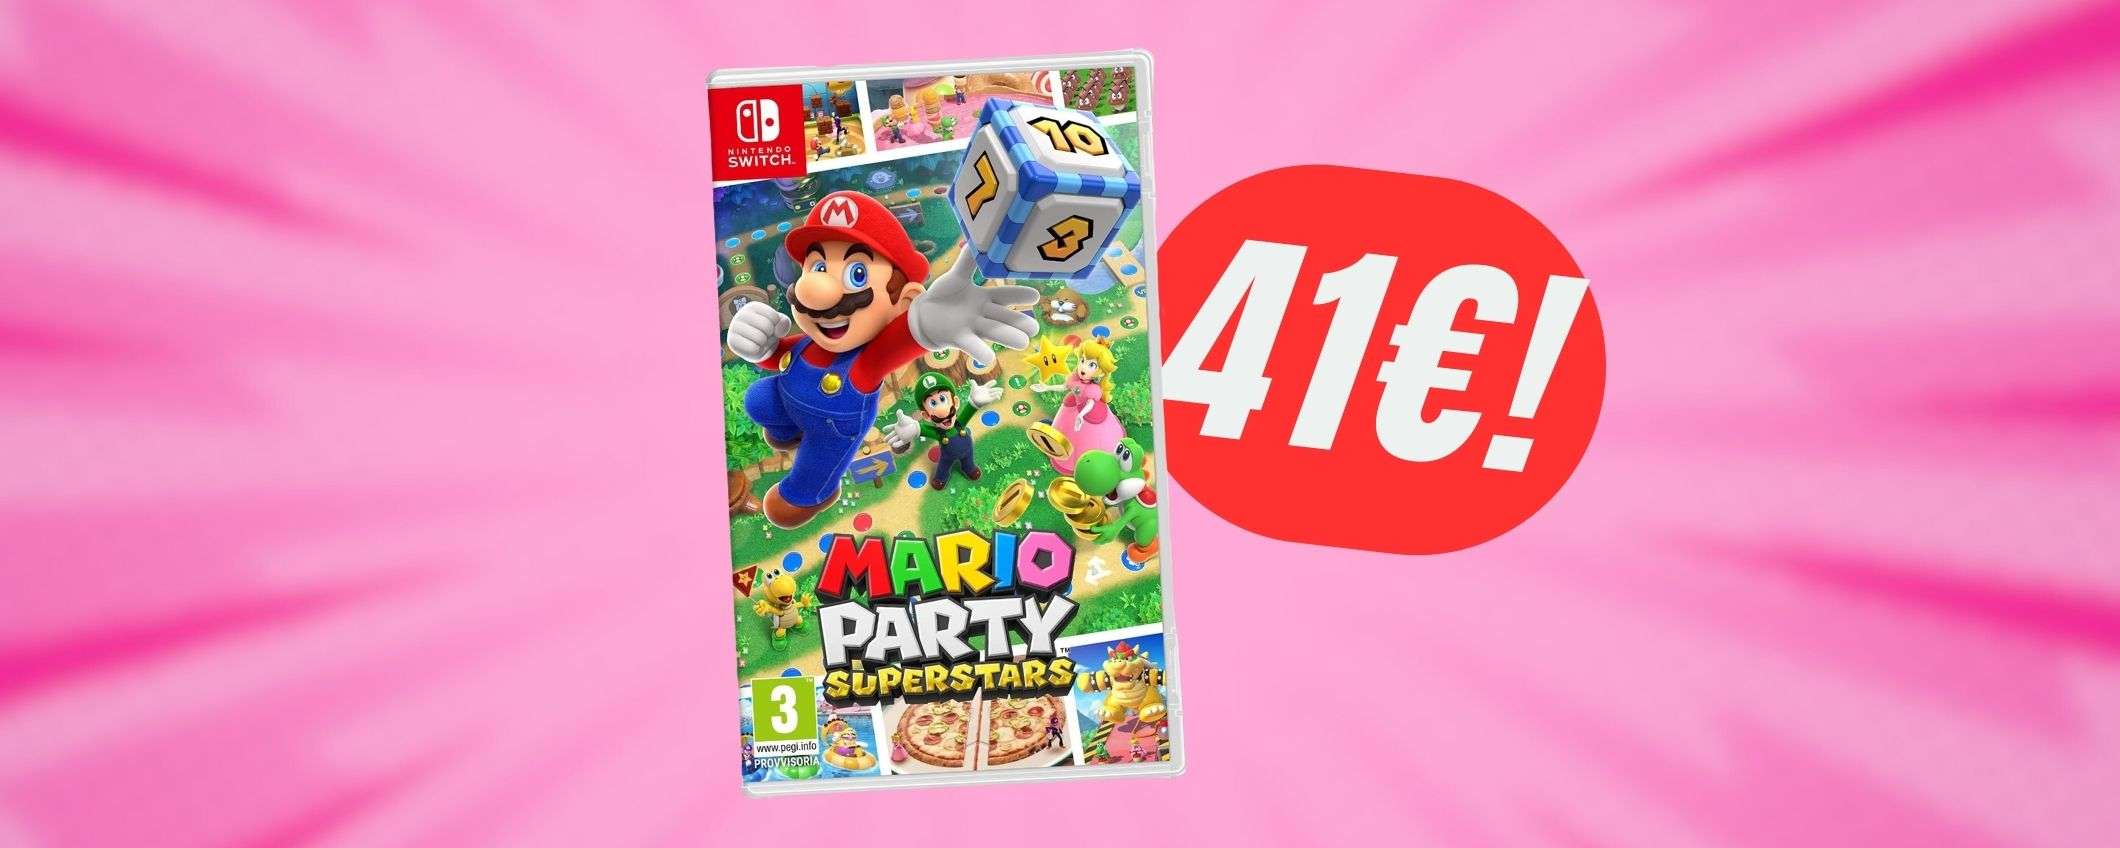 Mario Party Superstars farà divertire tutta la famiglia (e costa 41€!)